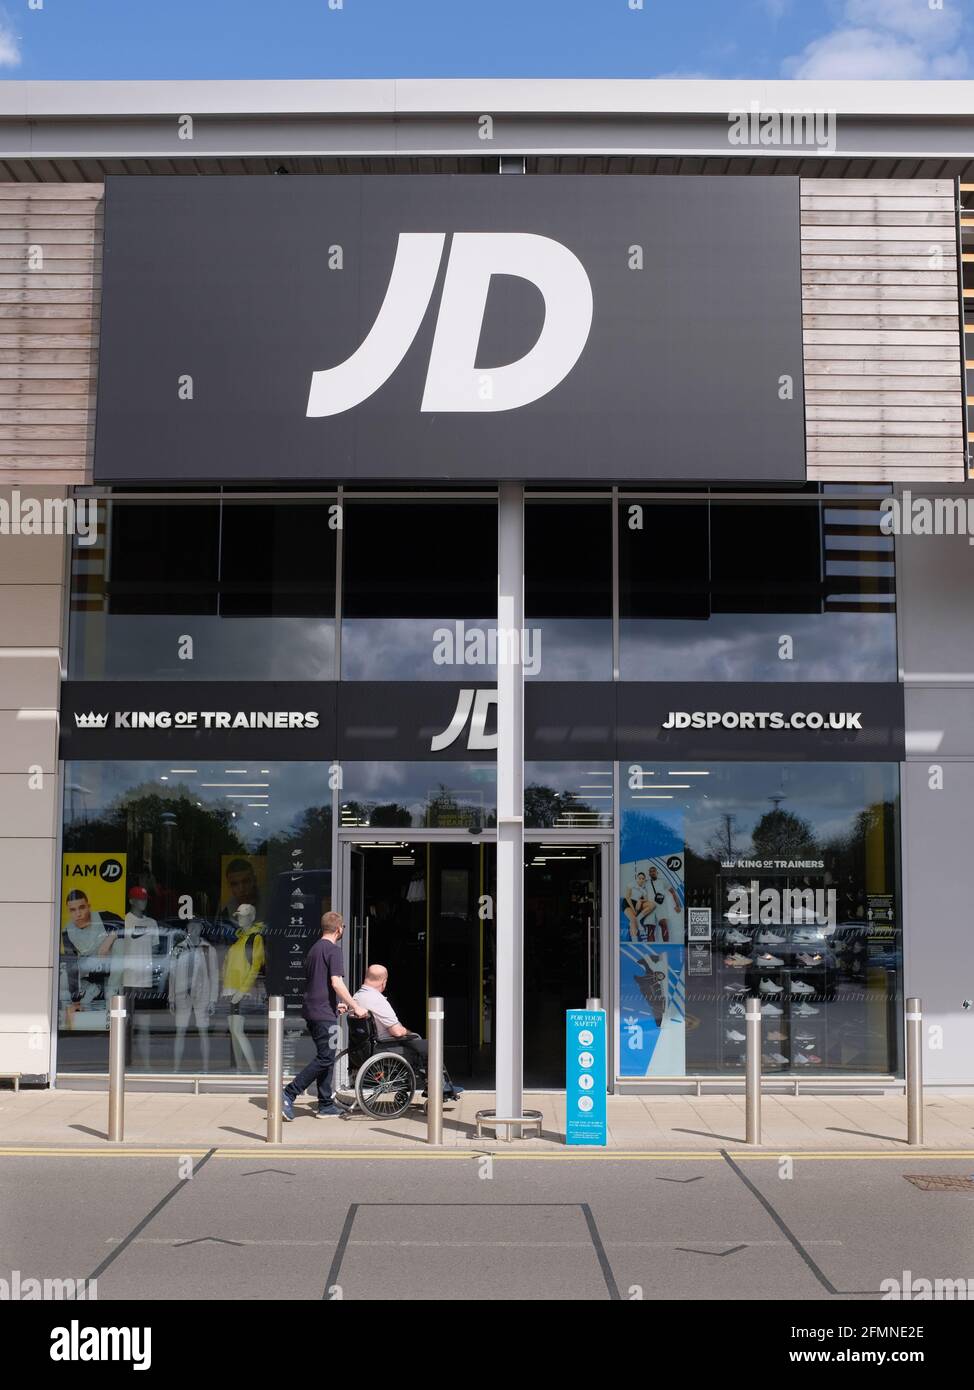 Tienda de deportes JD en el parque comercial A1, Biggleswade, Bedfordshire, Inglaterra Foto de stock